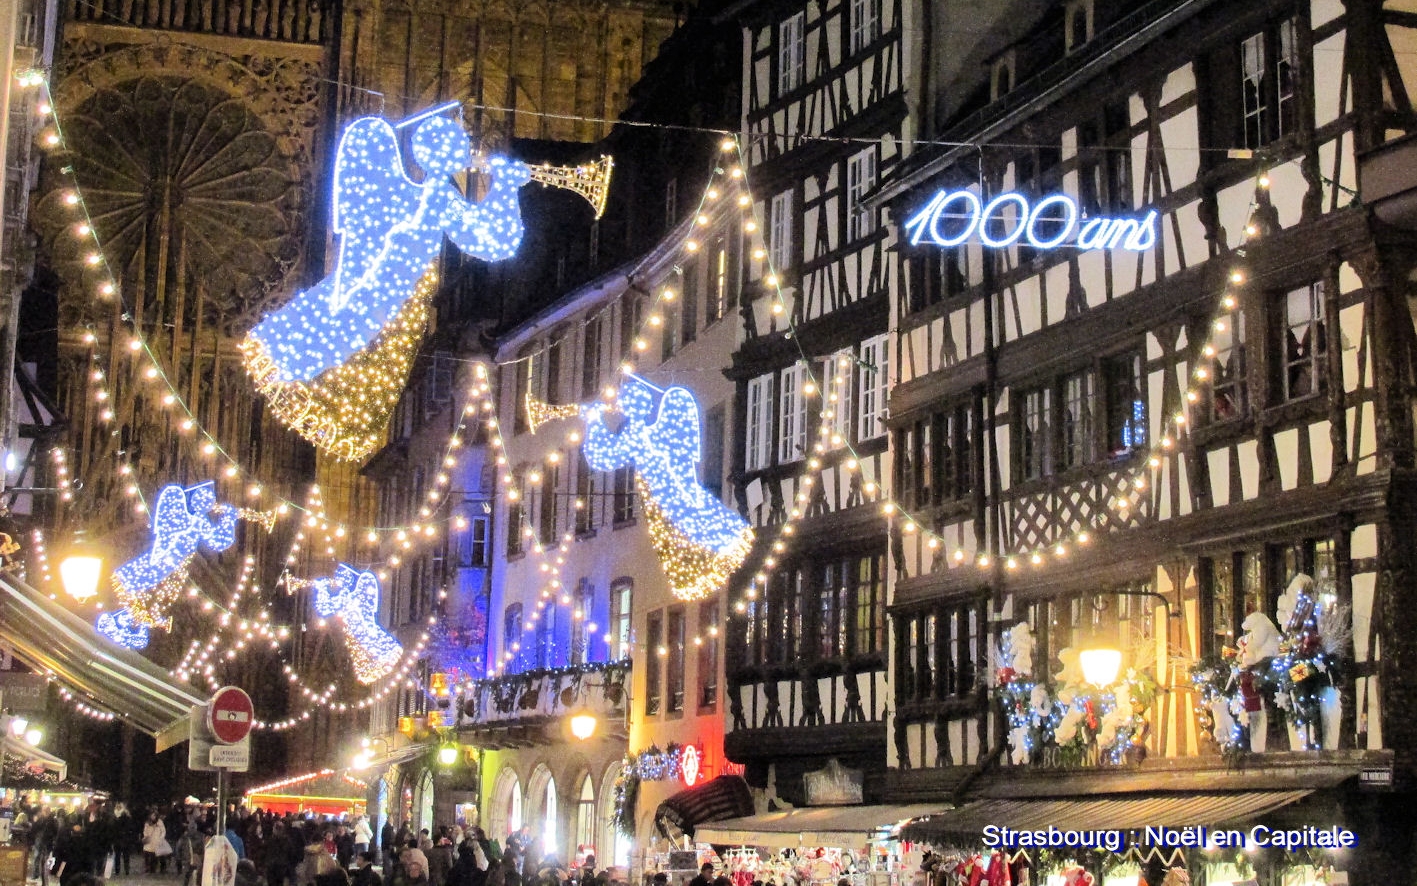 Le Marché de Noël de Strasbourg et ses illuminations...